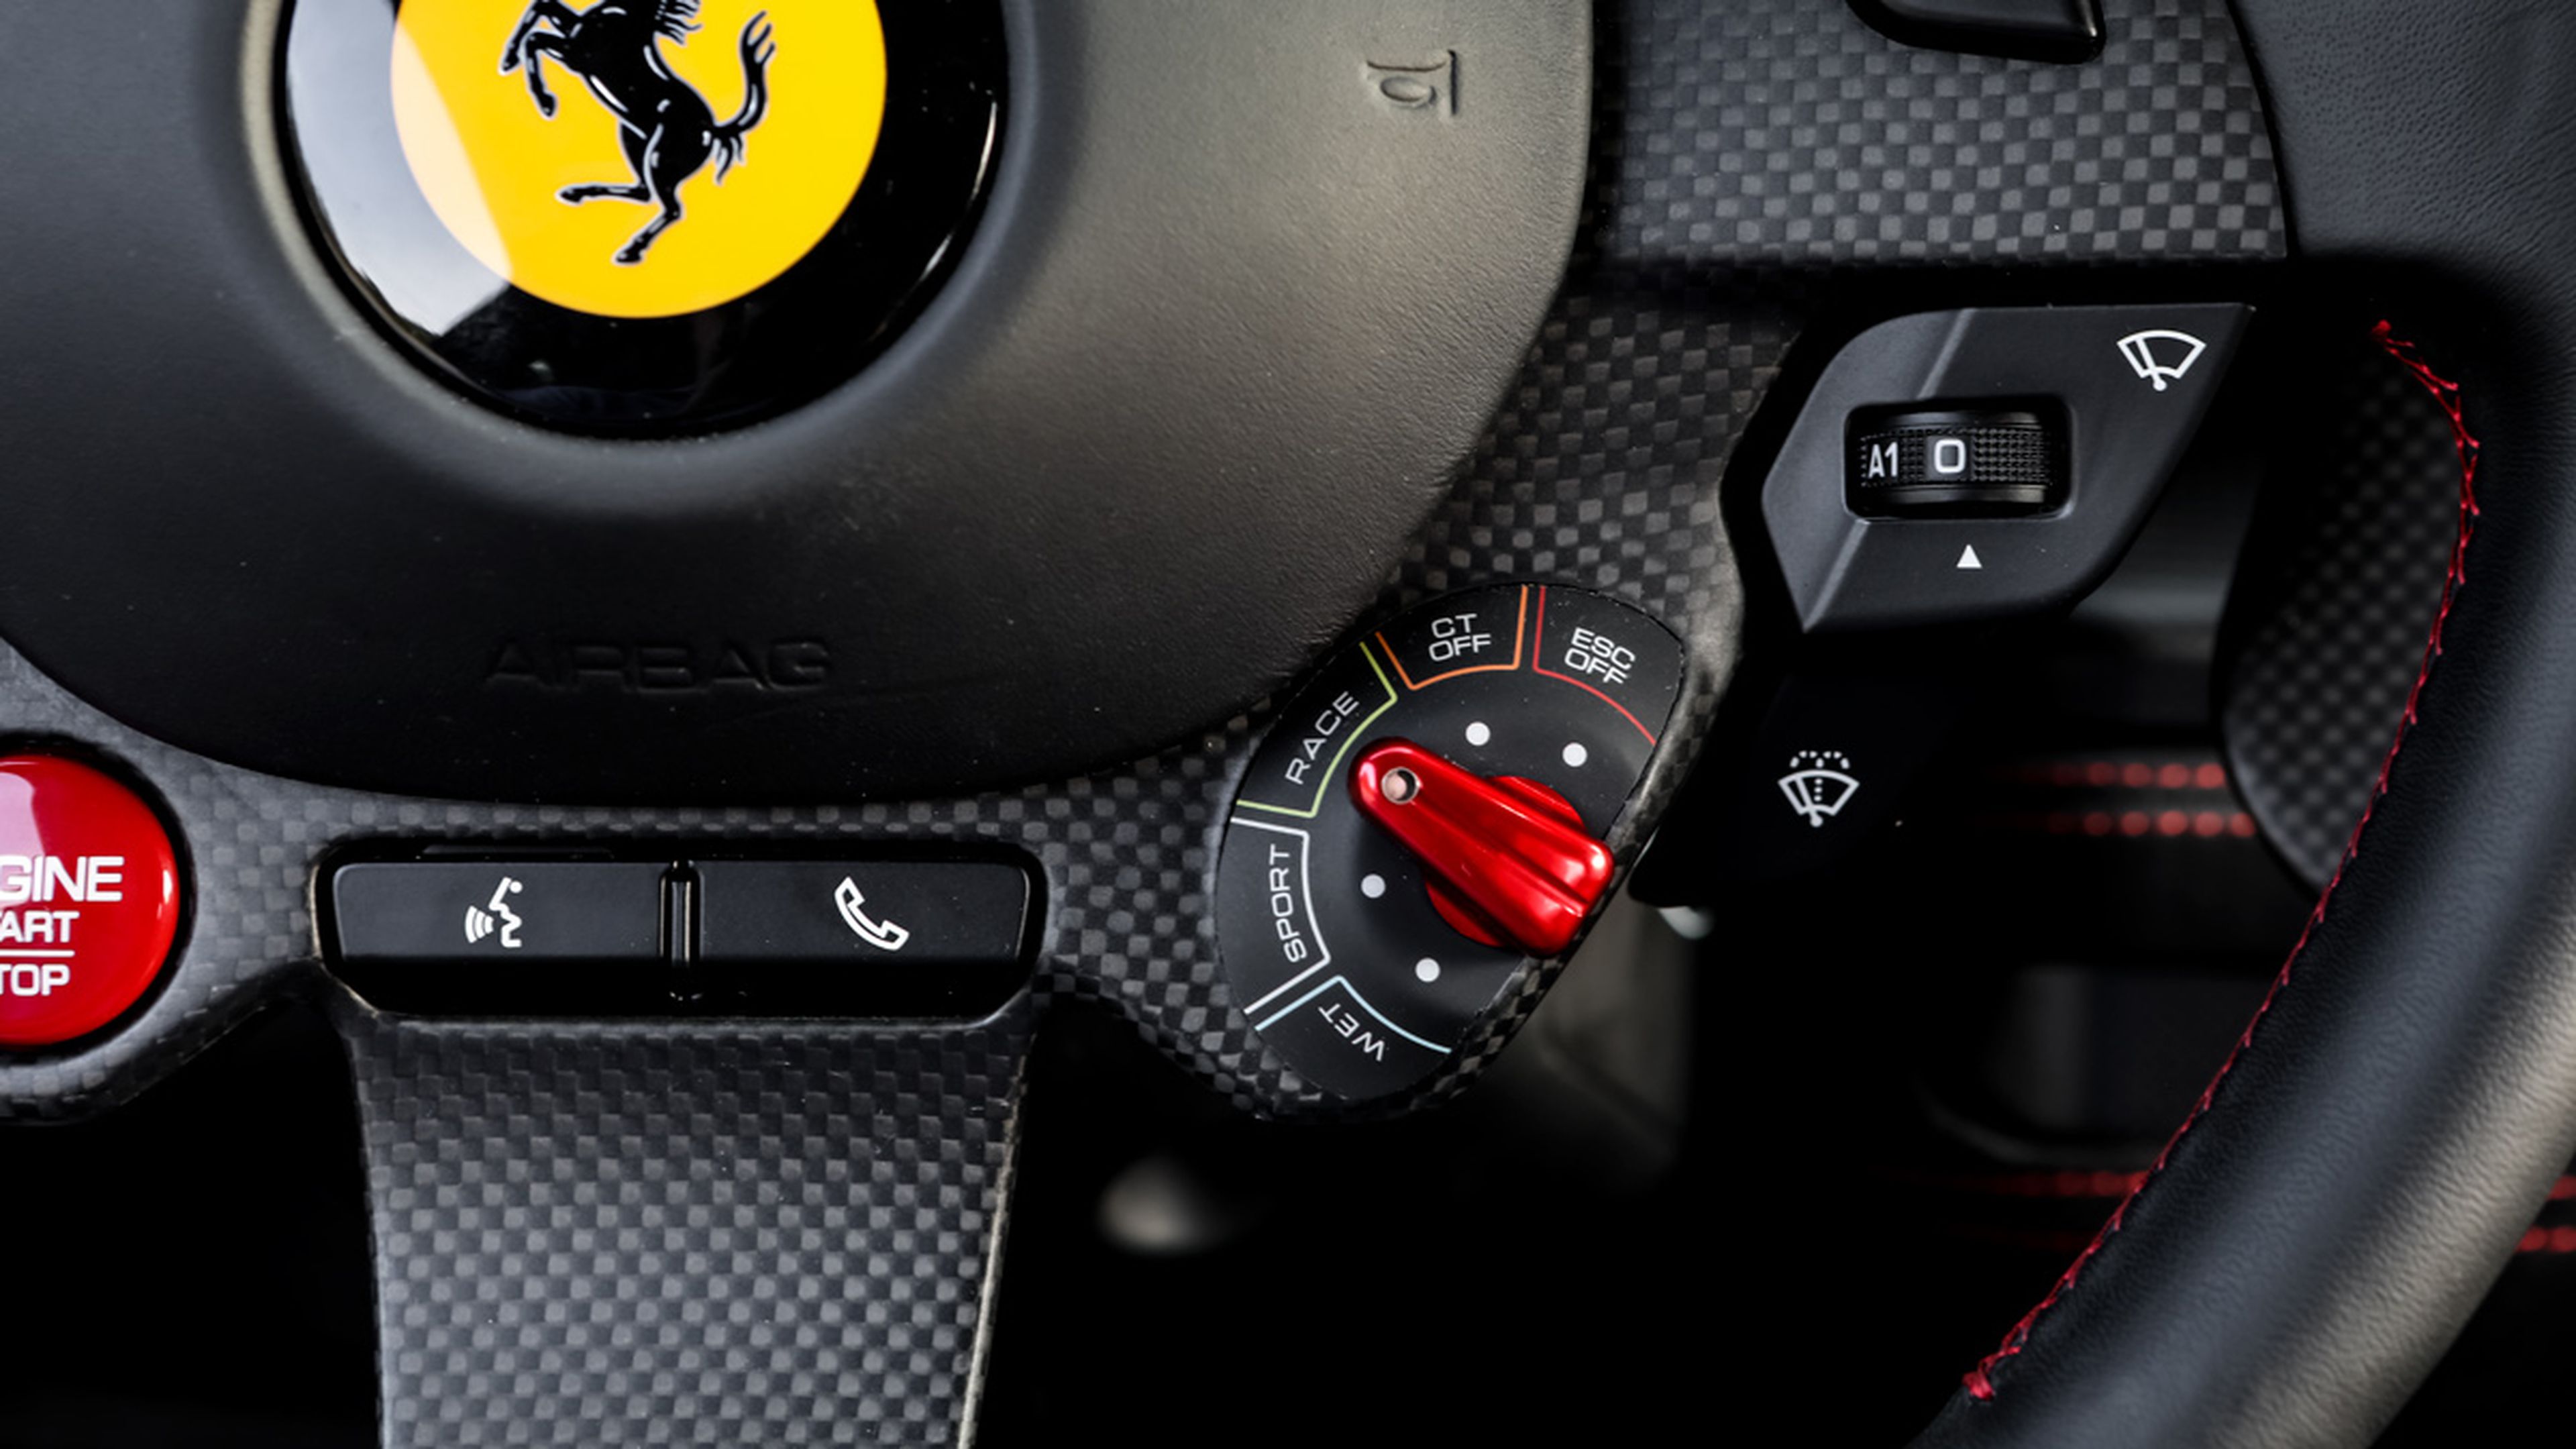 Prueba del Ferrari F8 Tributo